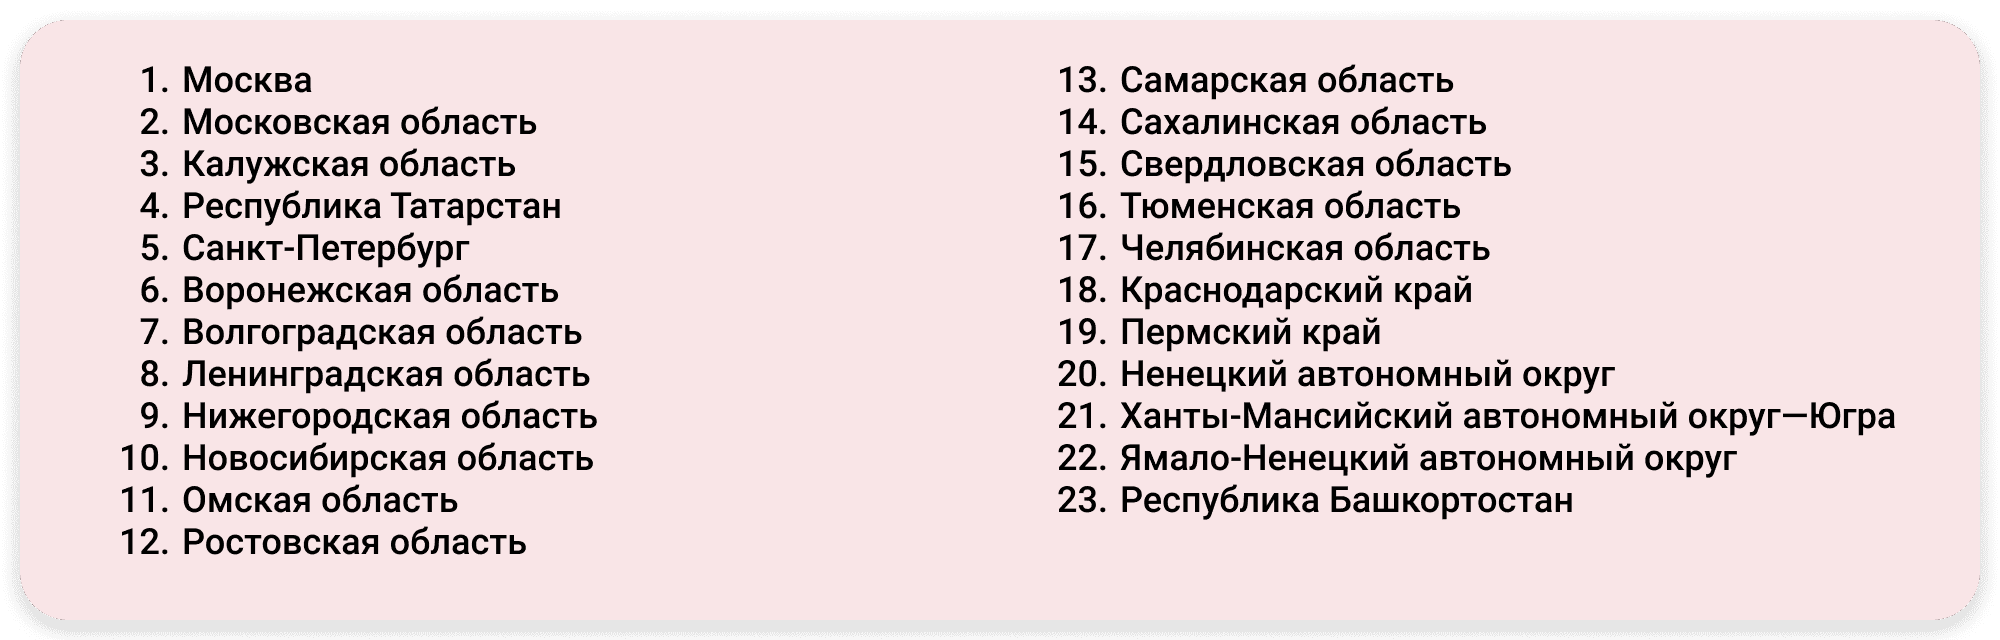 Самозанятые в 2020 году | astral.ru